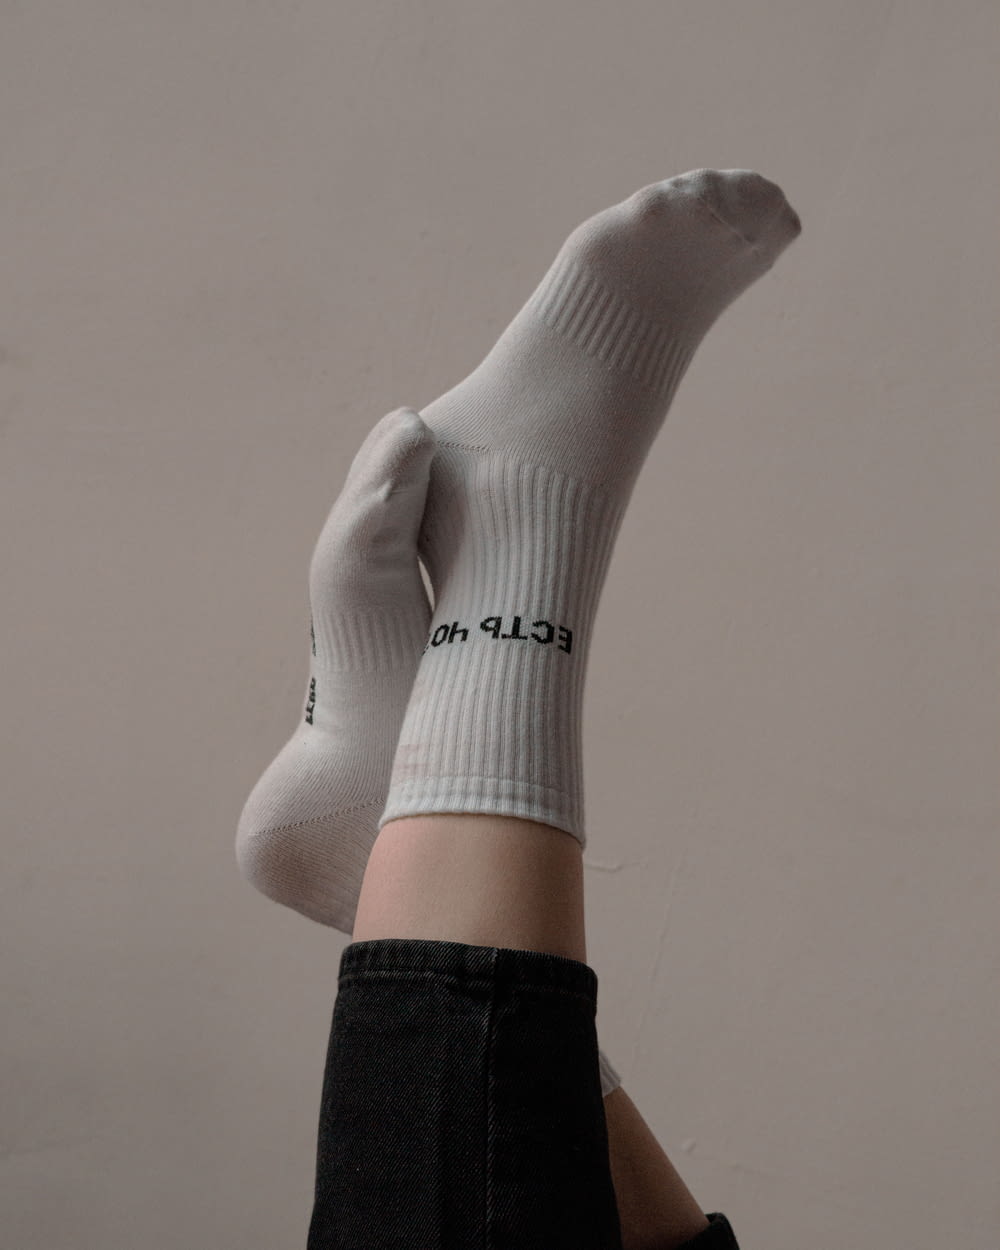 Persona que lleva un calcetín Nike blanco